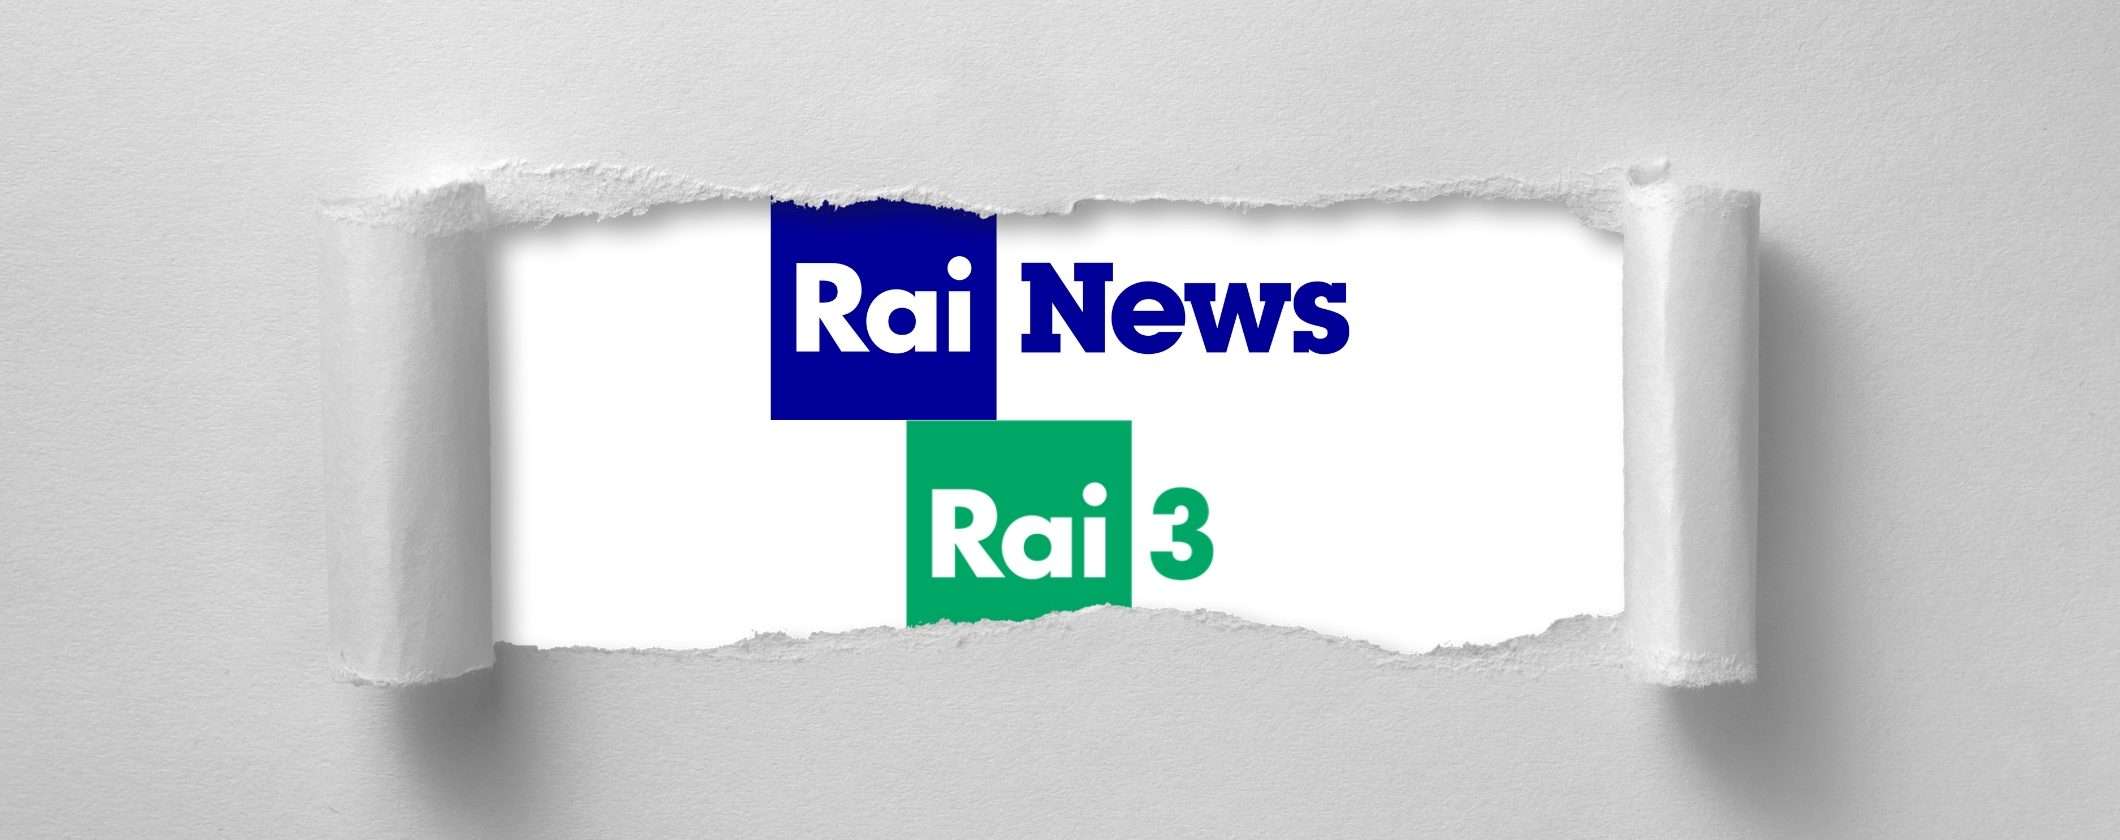 Digitale terrestre: tra meno di un mese addio a Rai 3 e Rai News